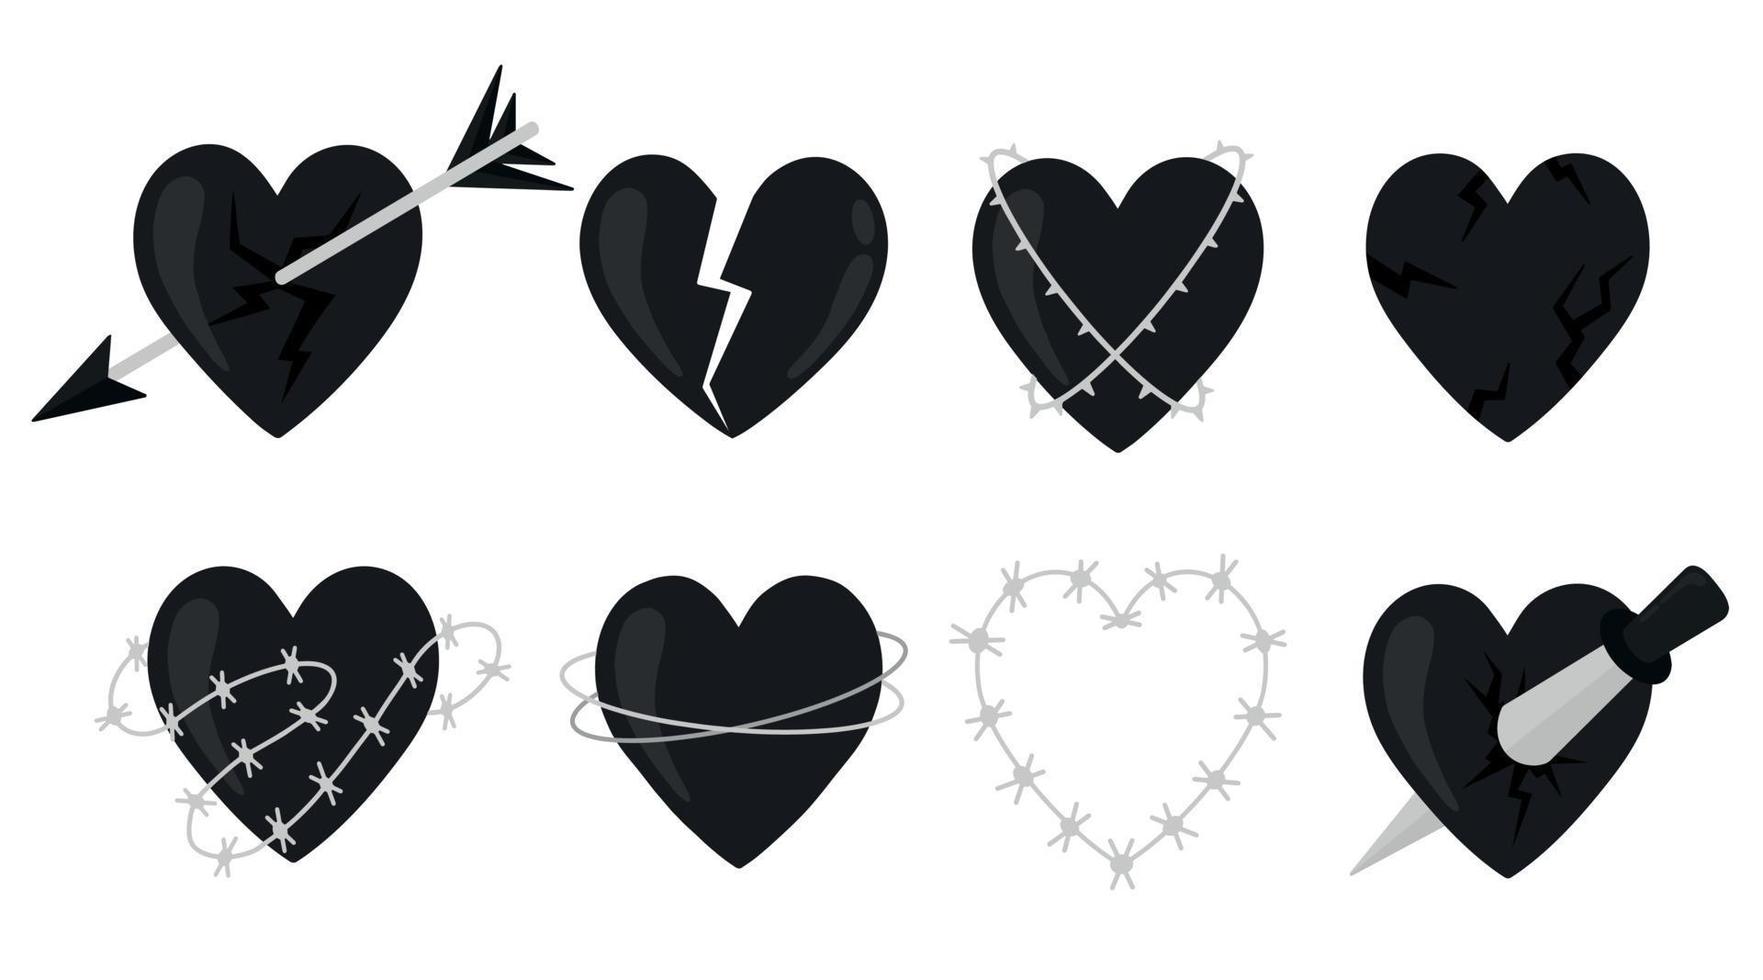 vector reeks van gestileerde harten. Valentijnsdag dag zwart hart pictogrammen. gebroken harten in met weerhaken draad. ongelukkig liefde harten pictogrammen.